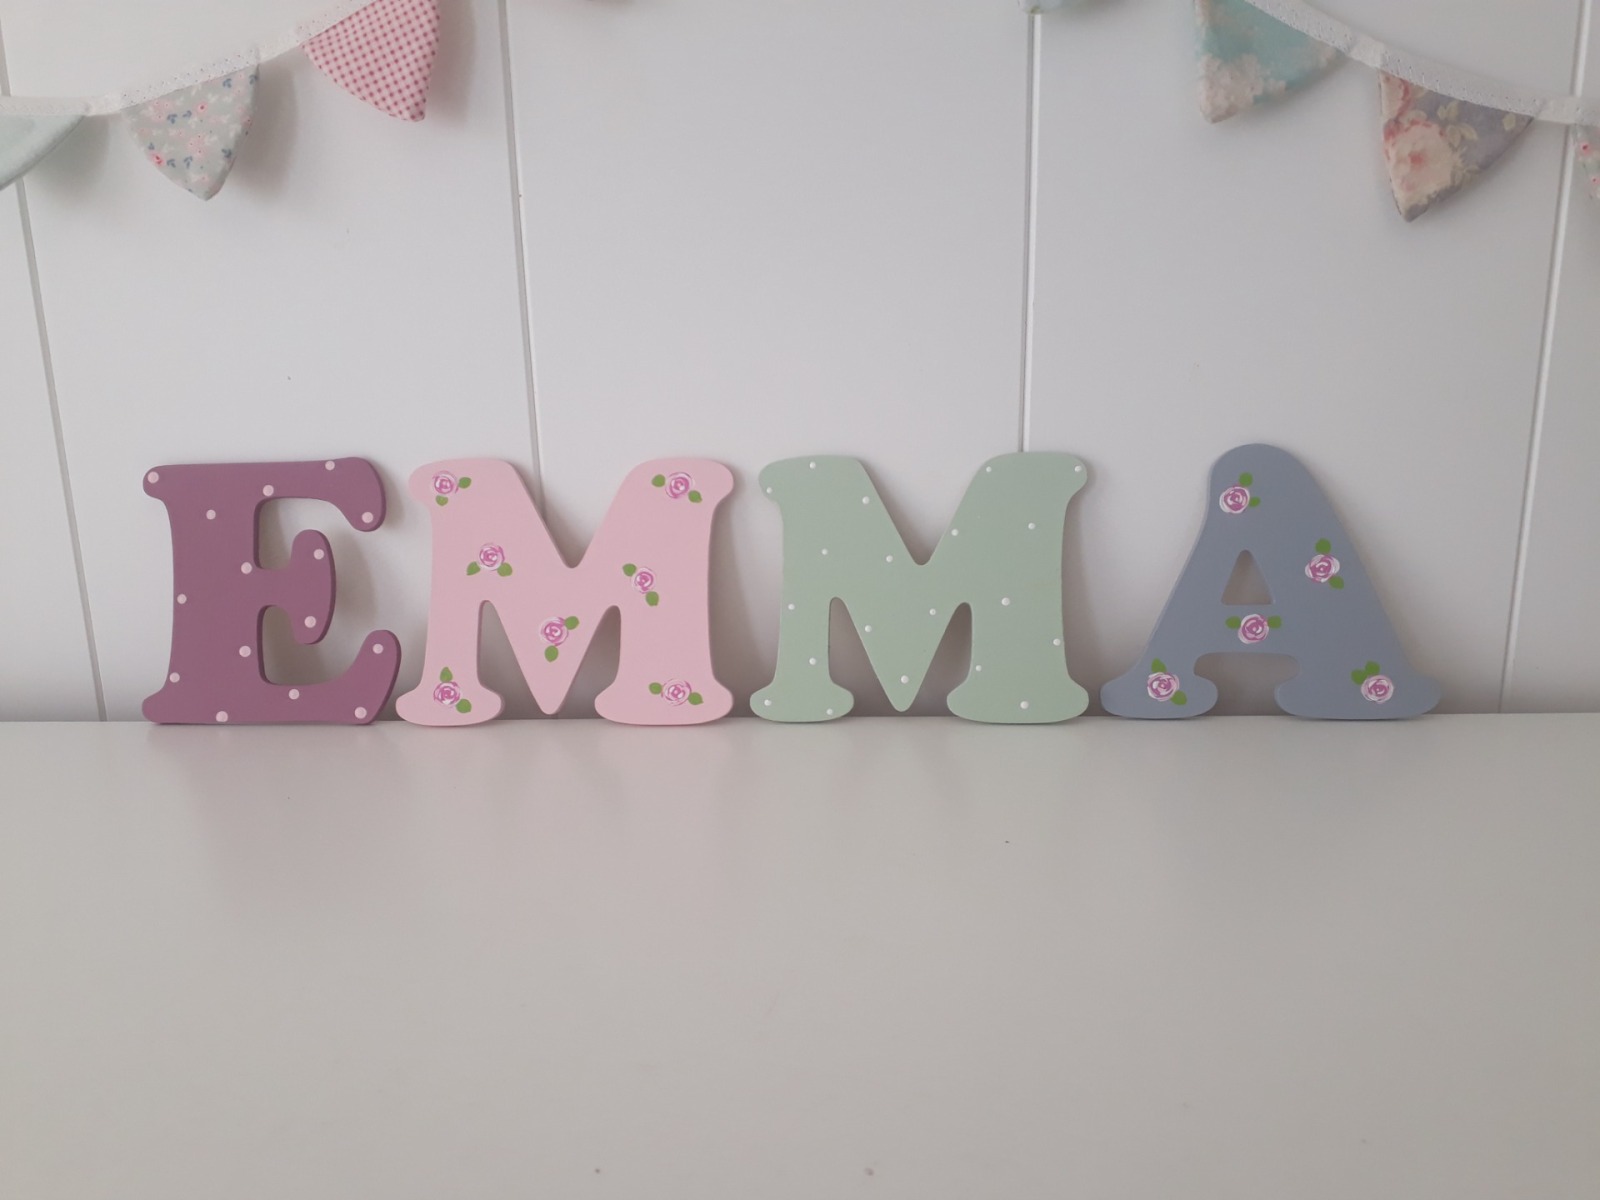 8cm Holzbuchstaben Kinderzimmer personalisiert in malve rose grau und mint